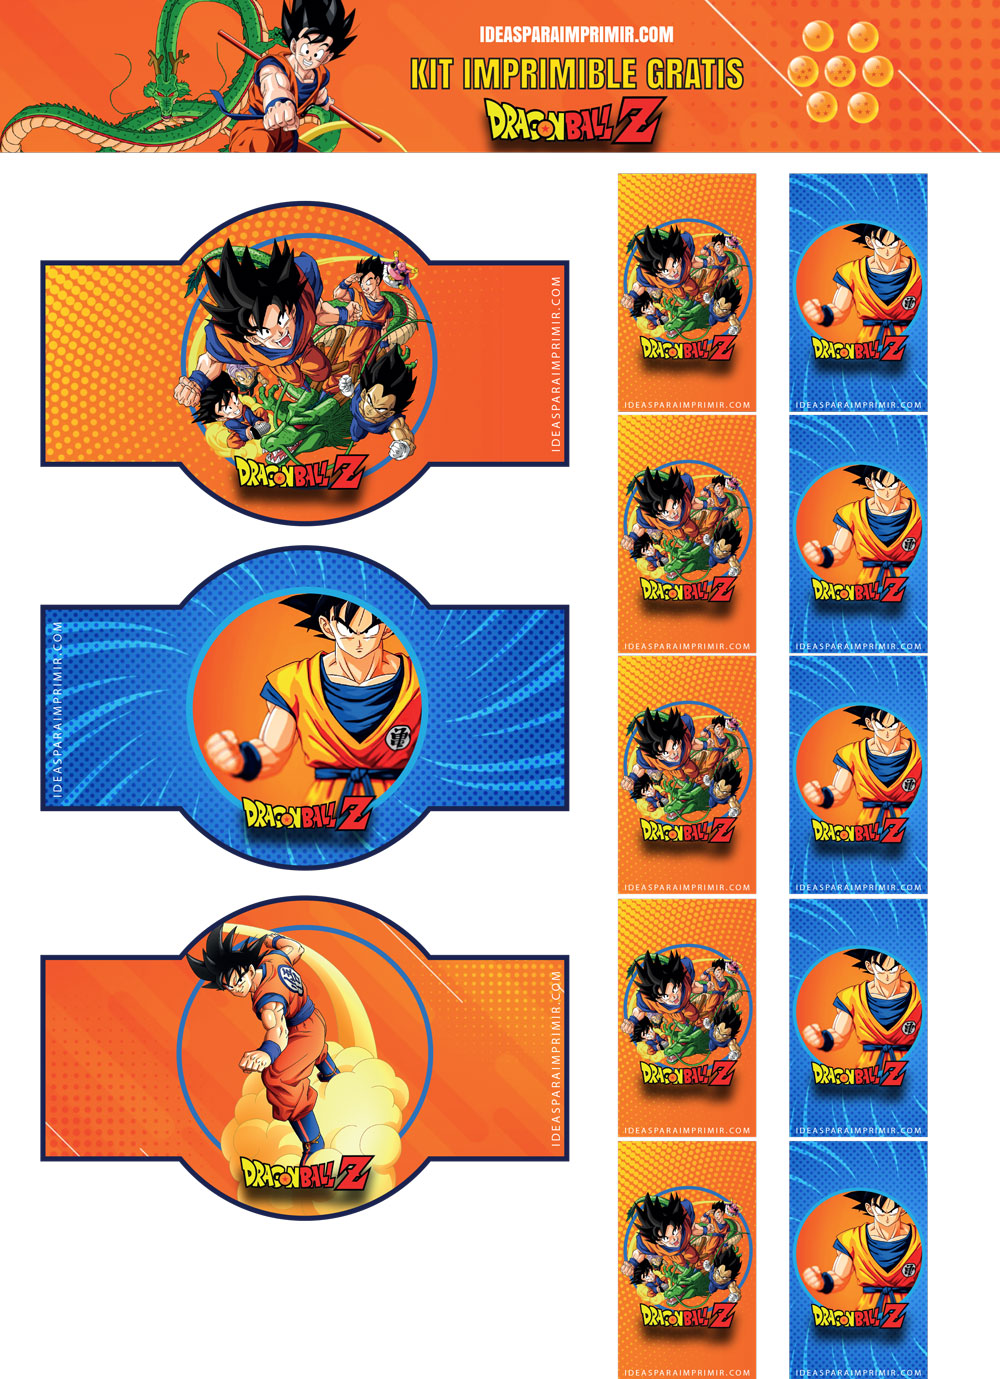 KIT de cumpleaños de DRAGON BALL (Goku y Vegeta) imprimible GRATIS. Incluye  +20 invitaciones editables!! - Ideas para imprimir